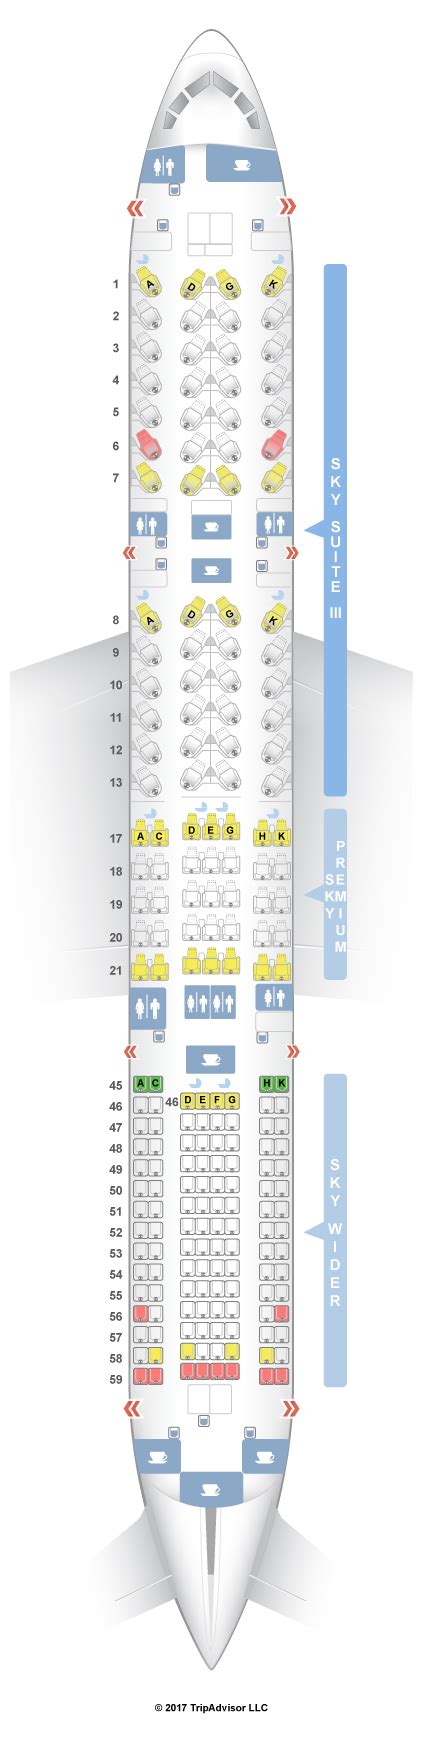 Tui Boeing 787 Dreamliner Seat Plan